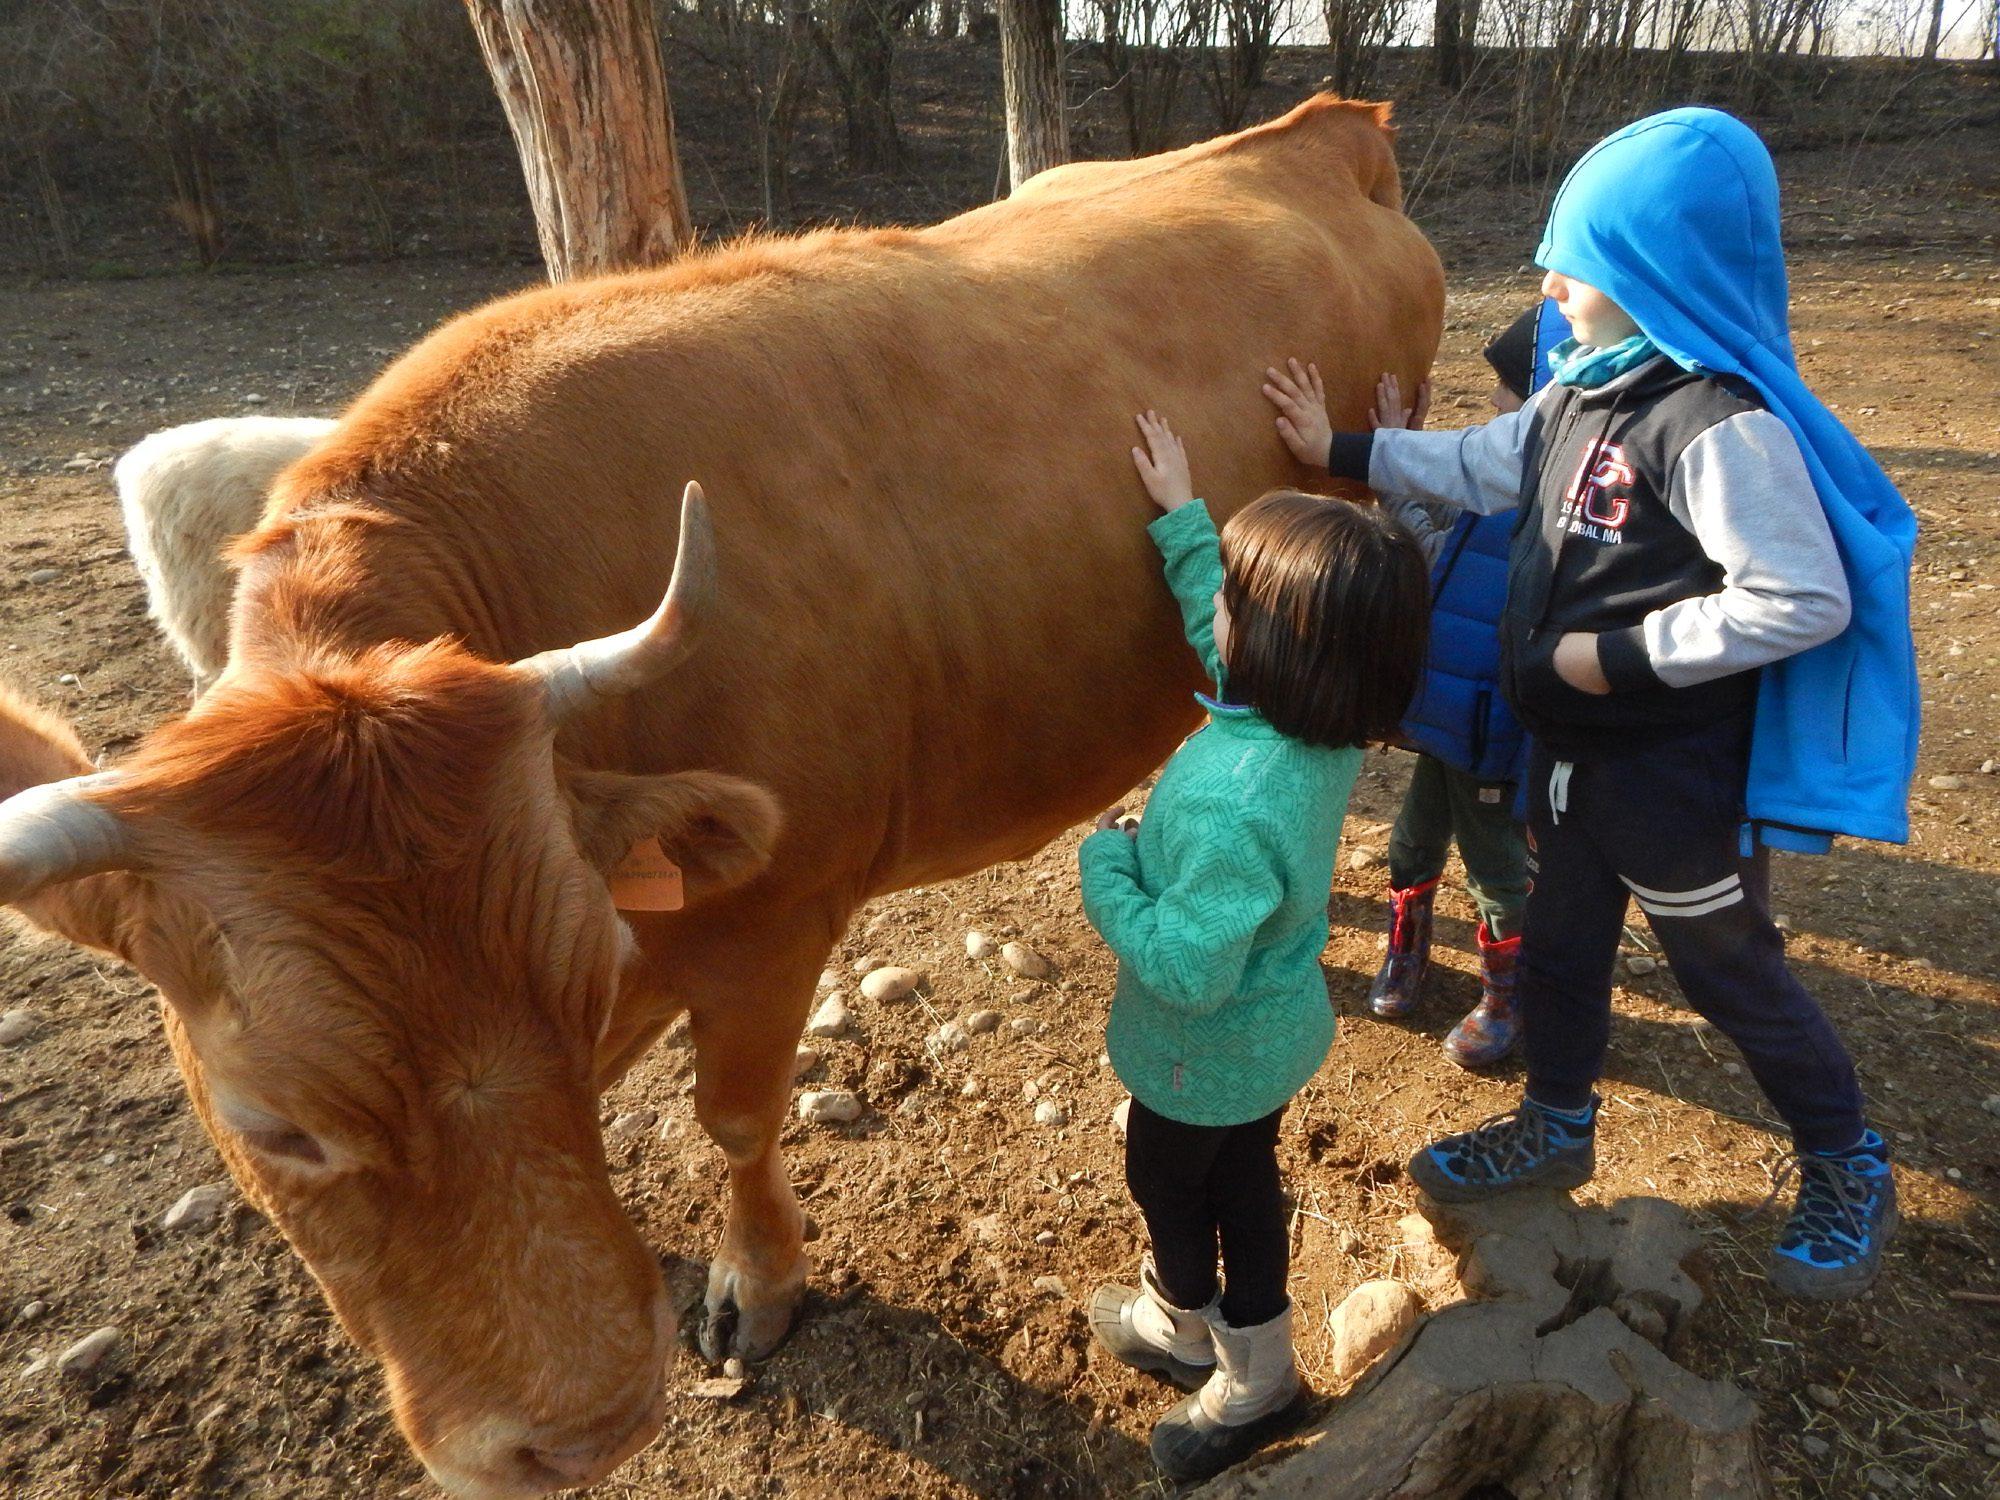 Addio a Divina, vacca varzese veterana della fattoria del Parco degli Aironi